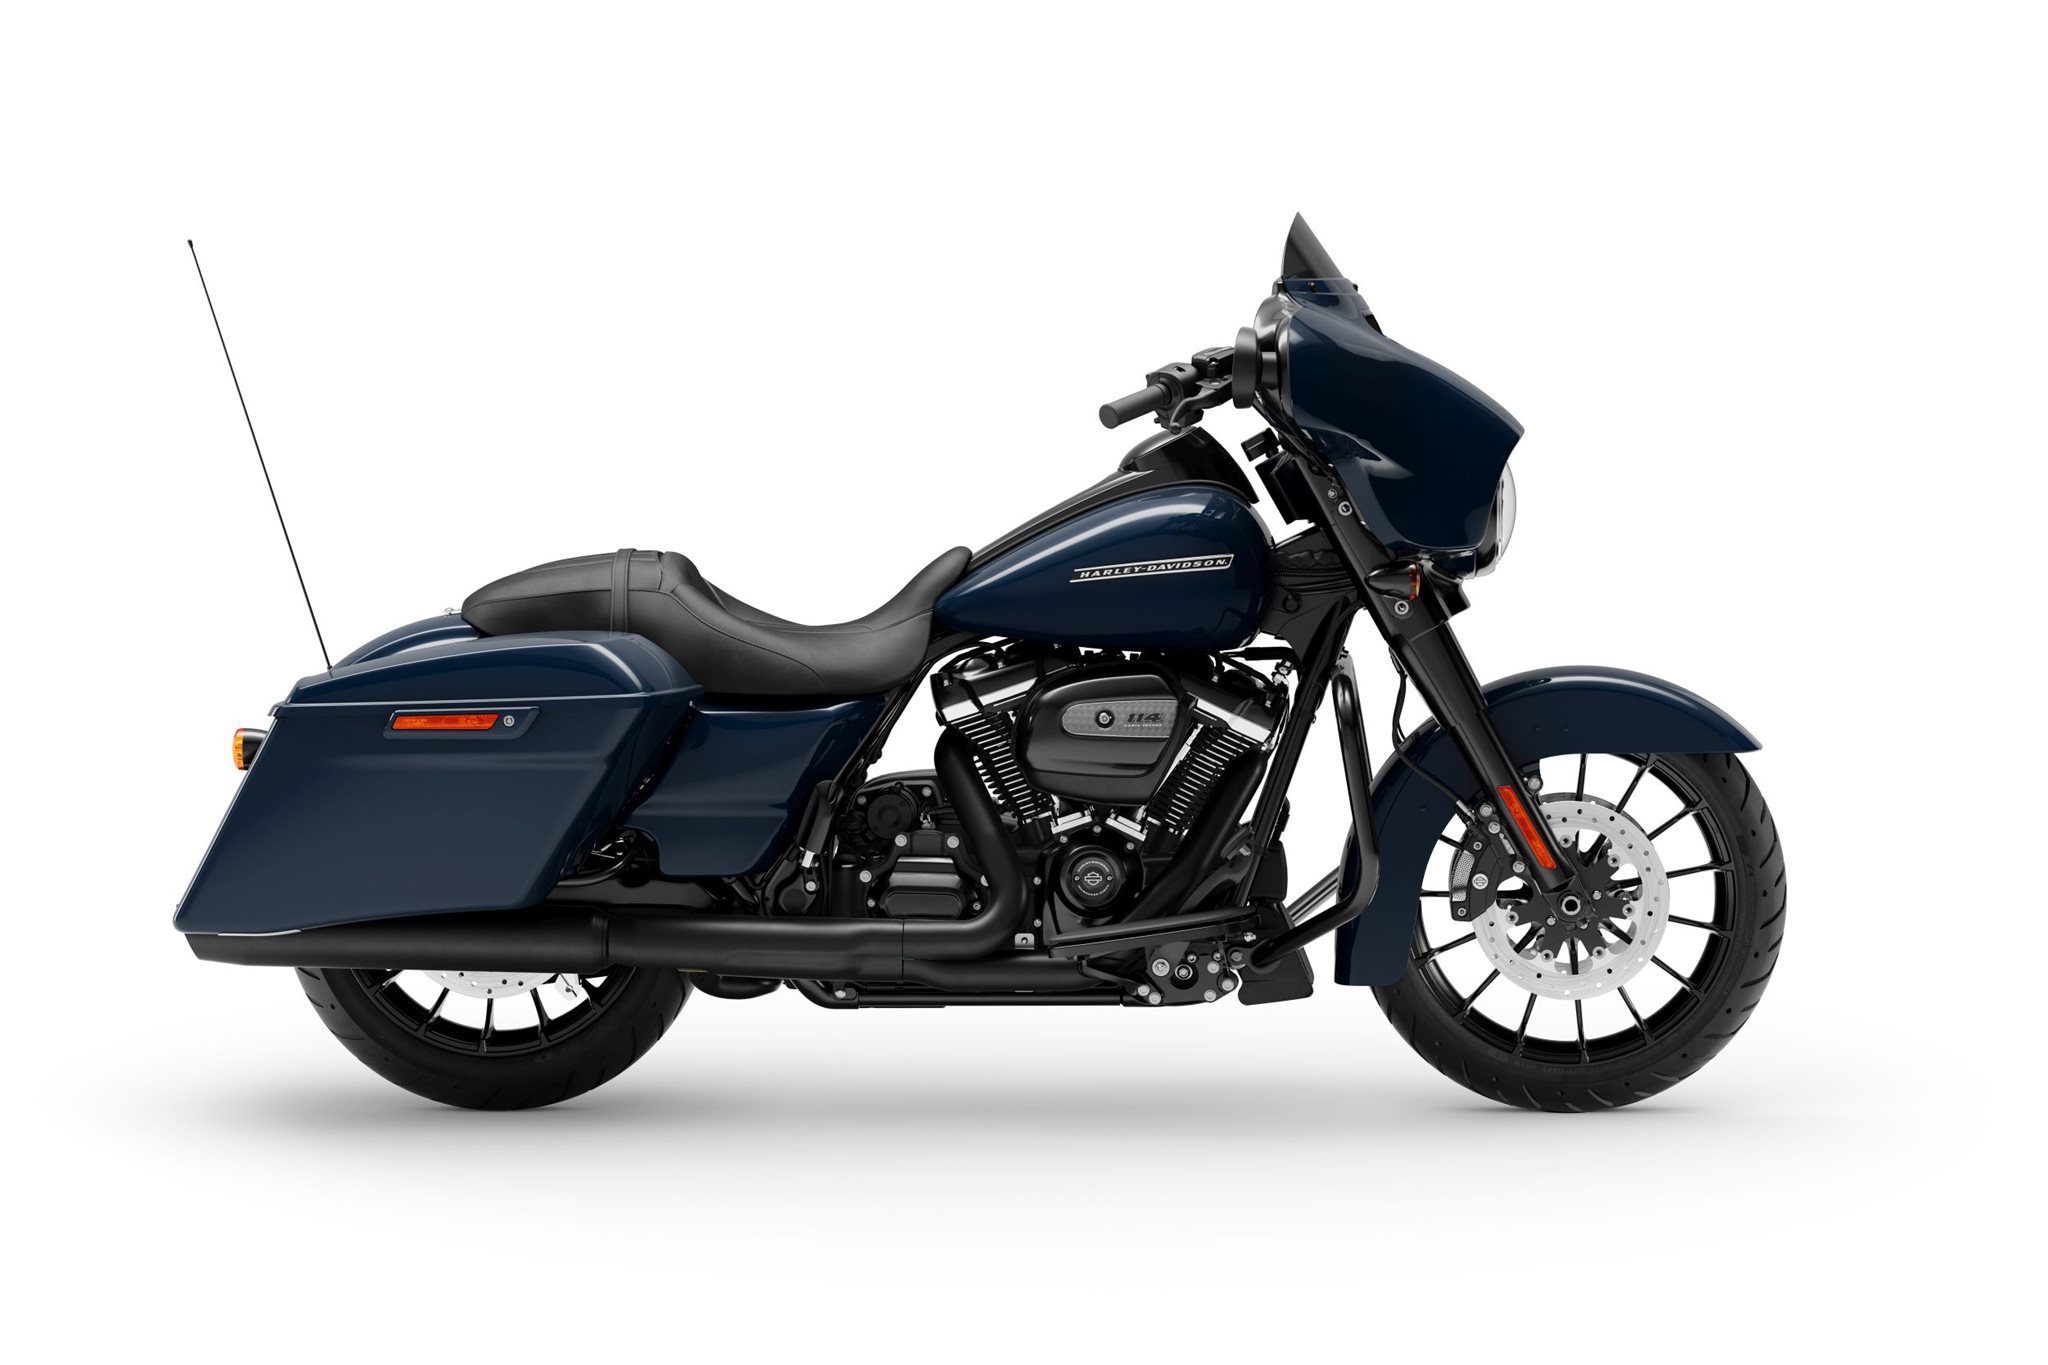 Motorrad Vergleich Harley Davidson Touring Street Glide Special Flhxs 2020 Vs Harley Davidson Electra Glide Ultra Limited Low Flhtkl 2020